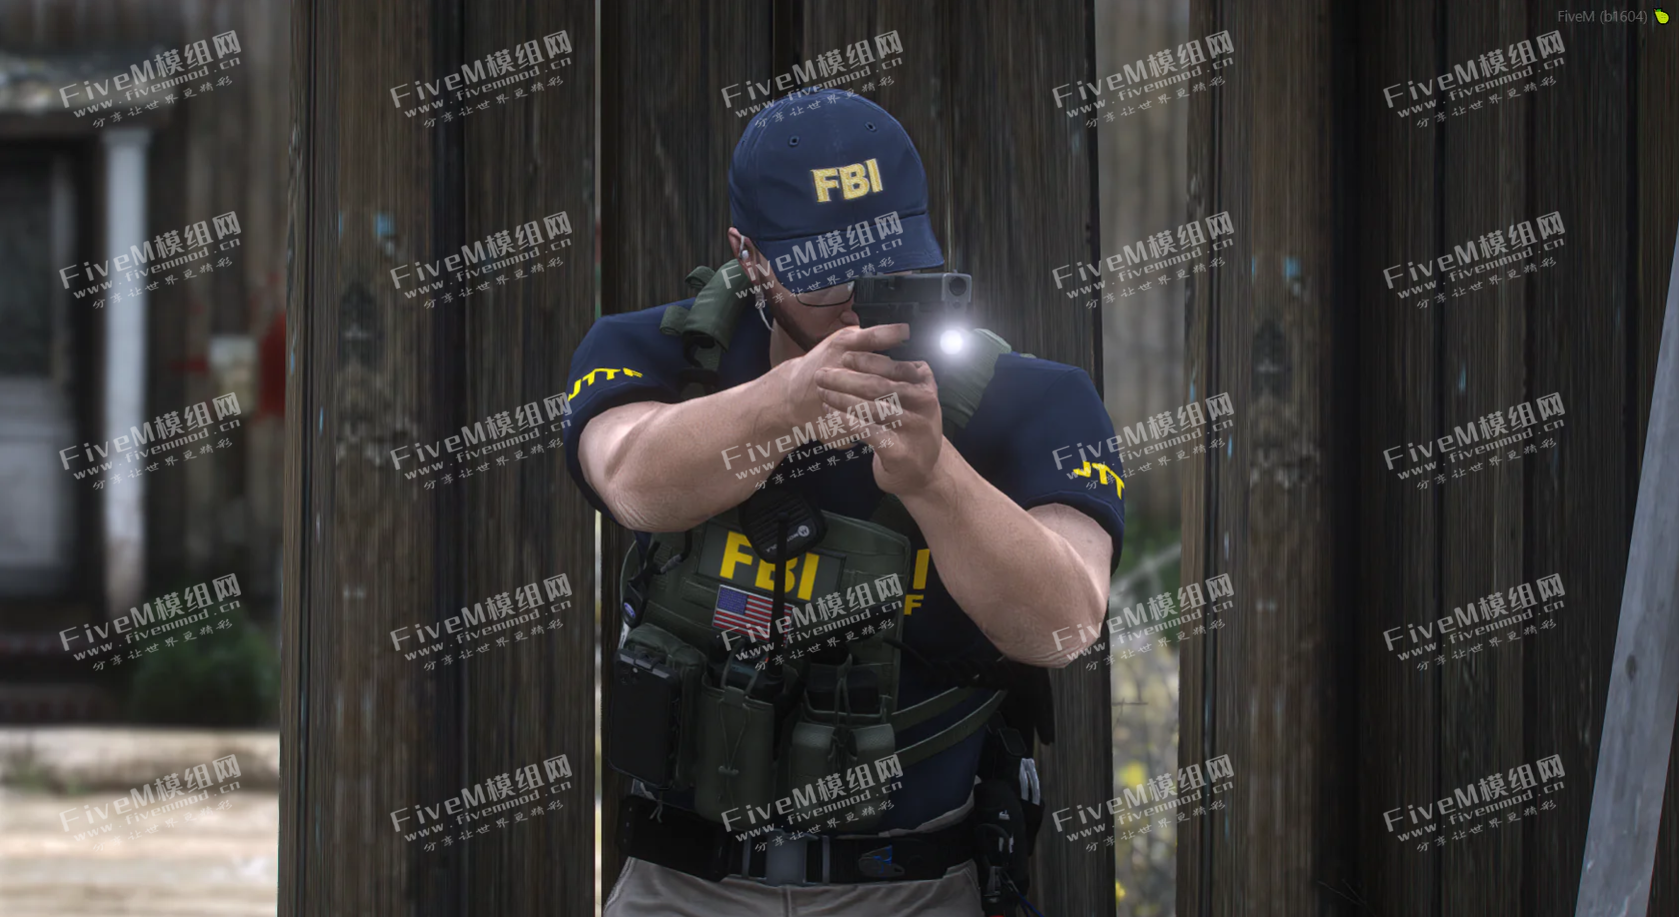 【美警精品】FBI EUP 套装